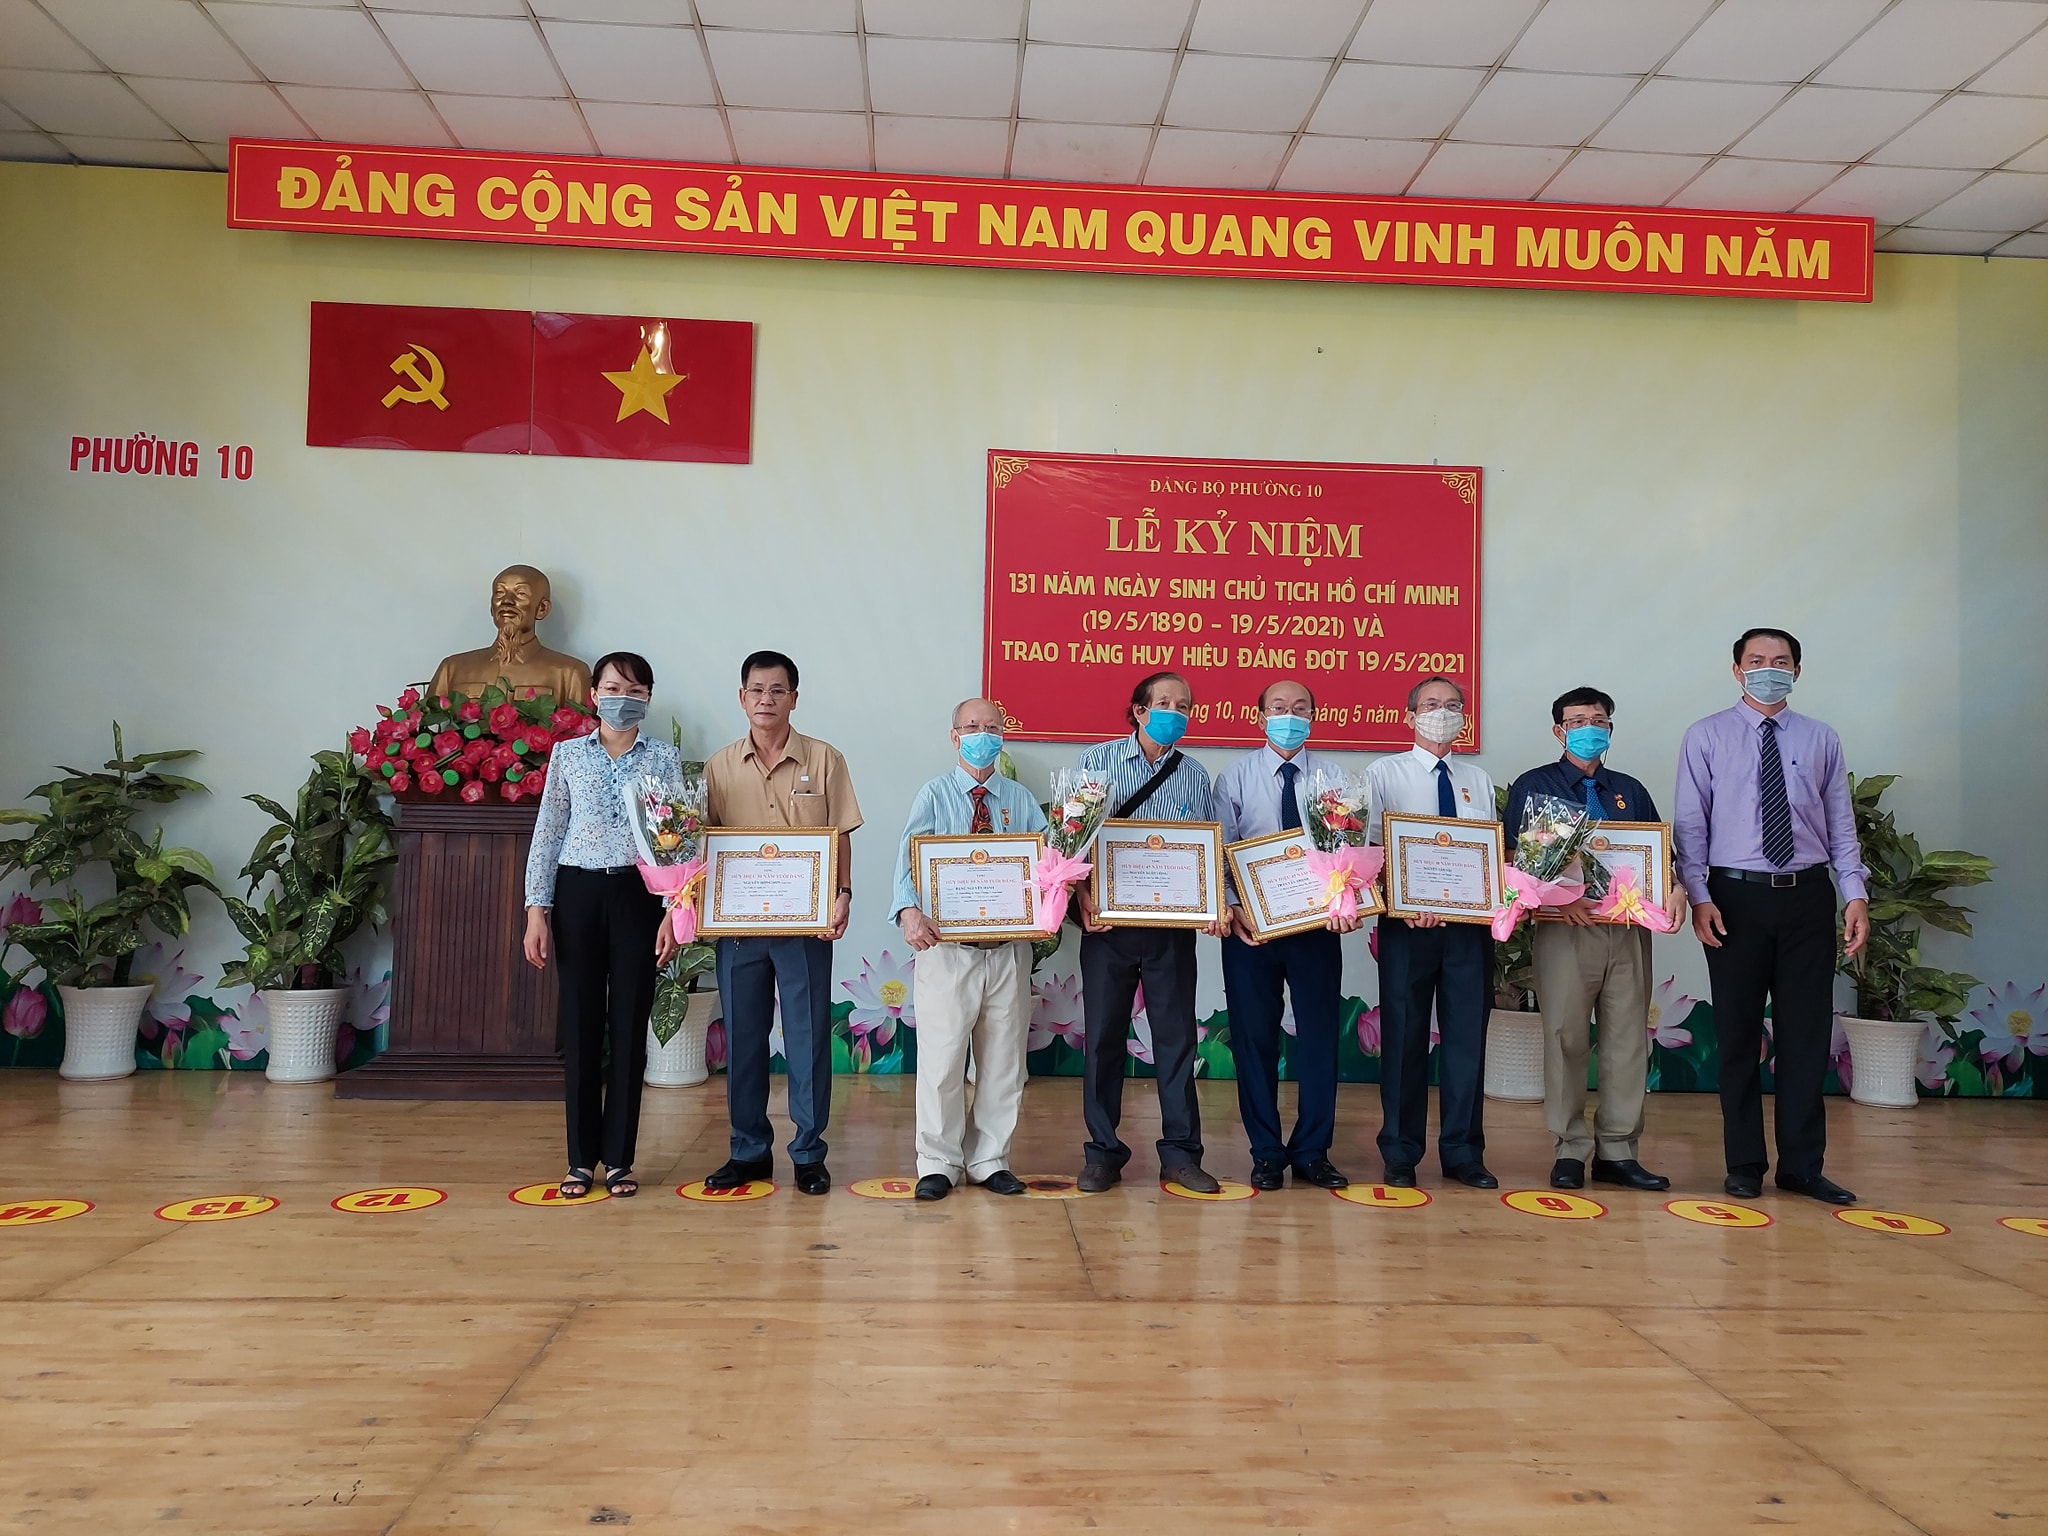 Lễ kỷ niệm 131 năm Ngày sinh của Chủ tịch Hồ Chí Minh (19/5/1890 – 19/5/2021); trao tặng Huy hiệu Đảng đợt 19/5/2021.